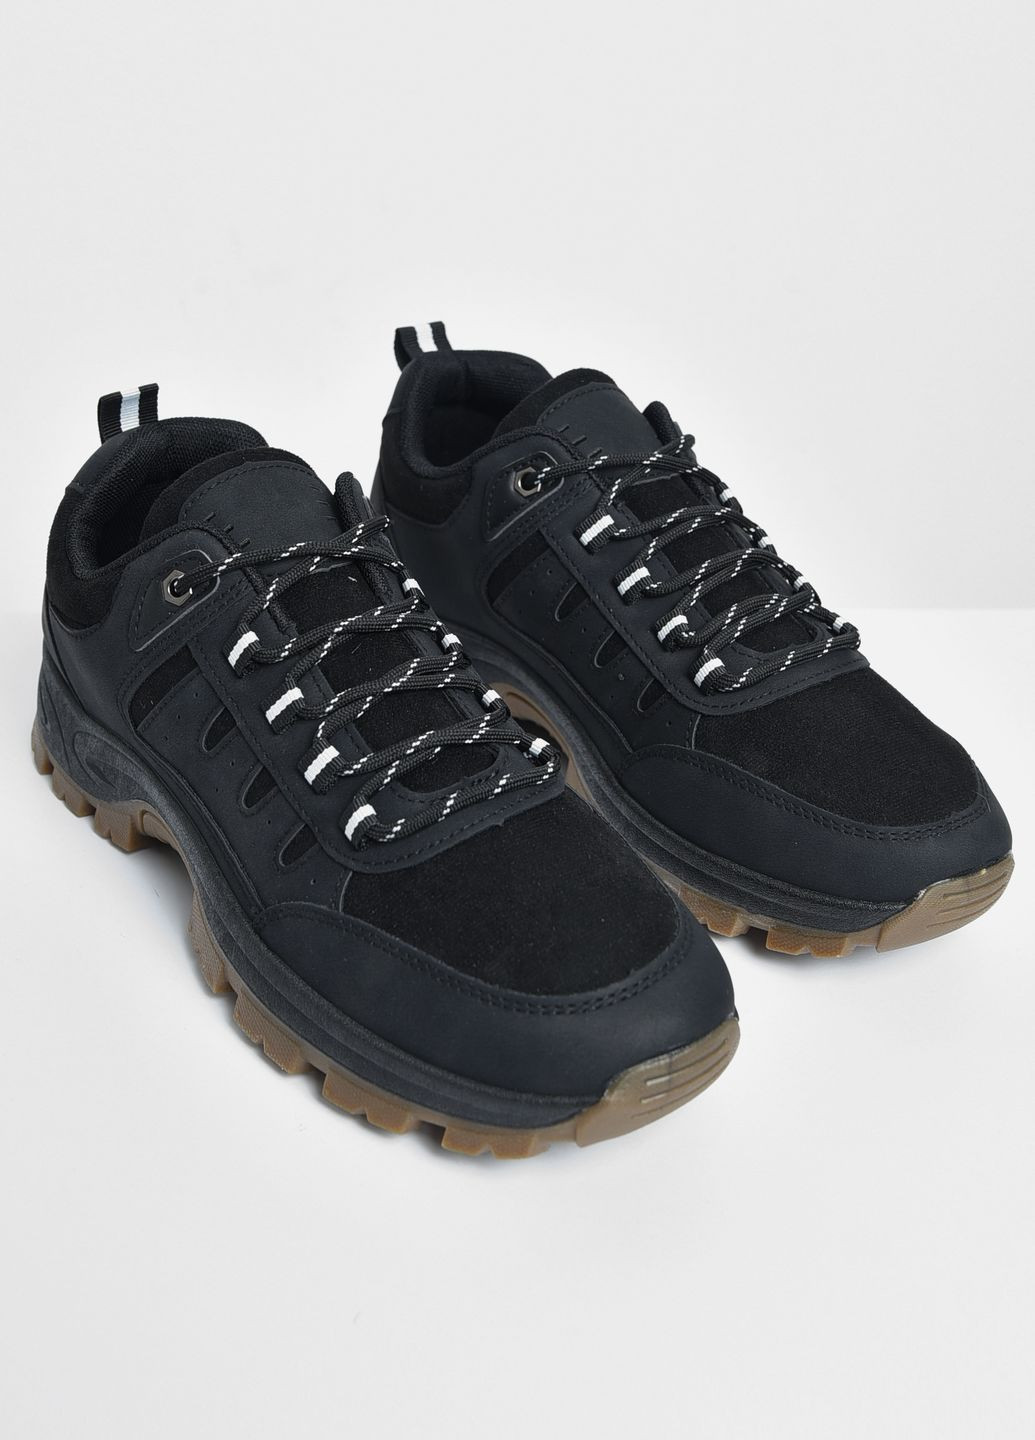 Черные осенние ботинки мужские черного цвета на шнуровке Let's Shop